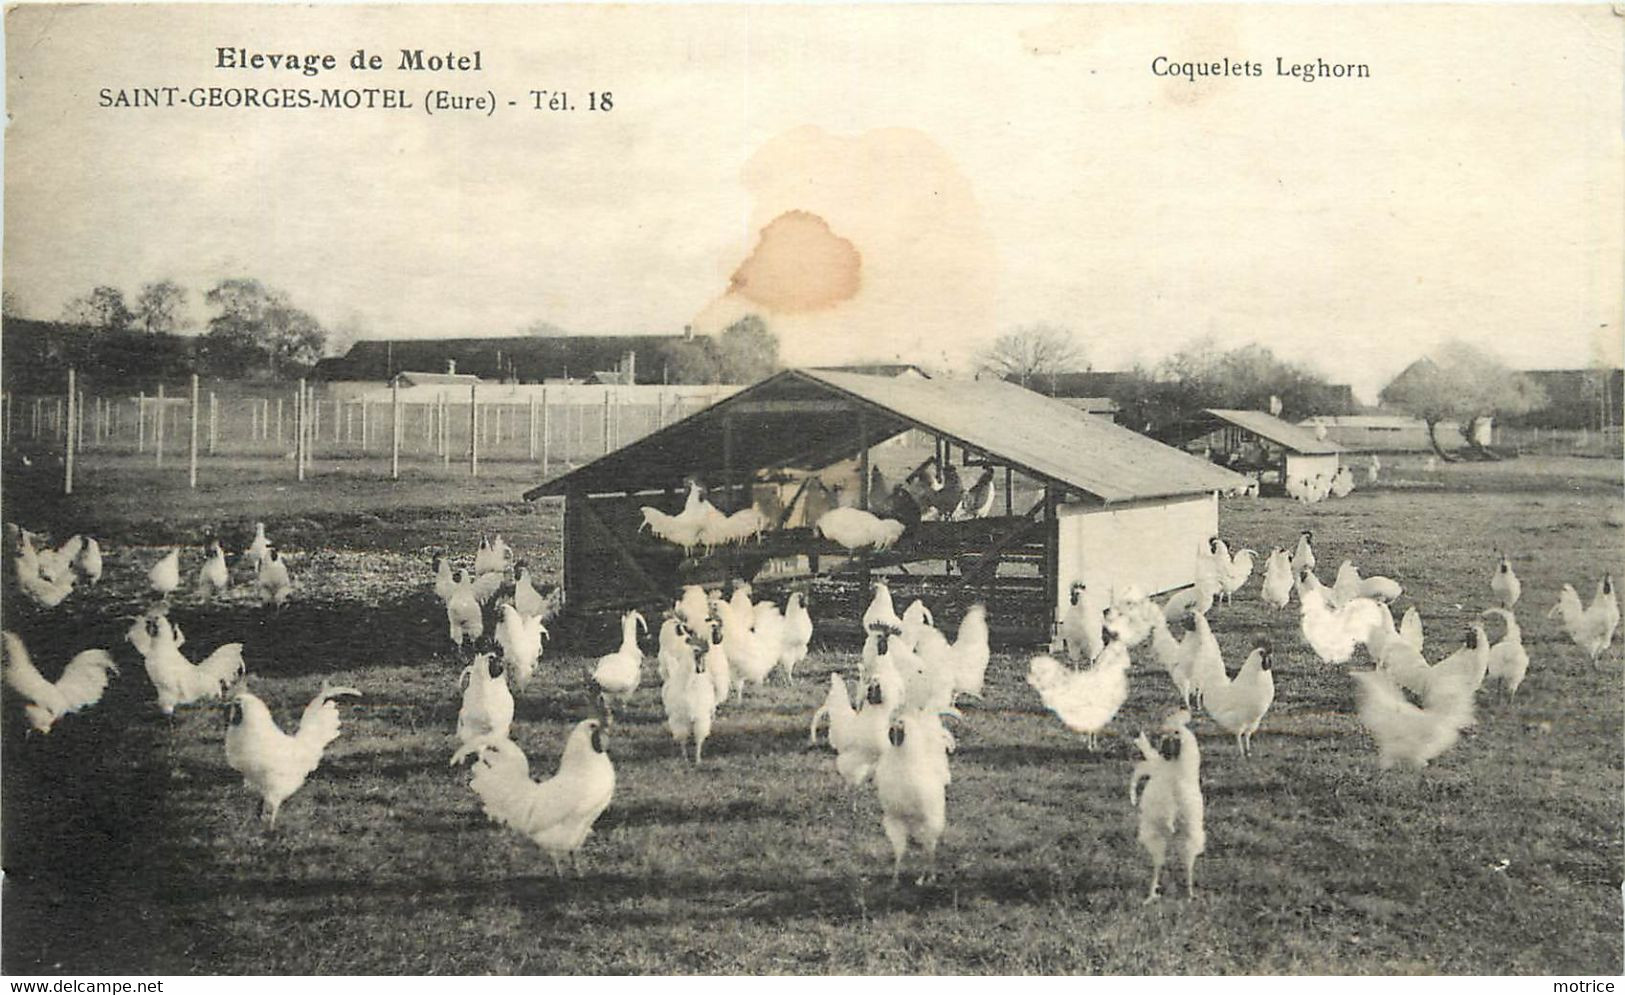 SAINT GEORGES MOTEL - Elevage De Motel, Coquelets Leghorn. (cachet De L'exploitation Au Dos De La Carte En 1939) - Saint-Georges-Motel